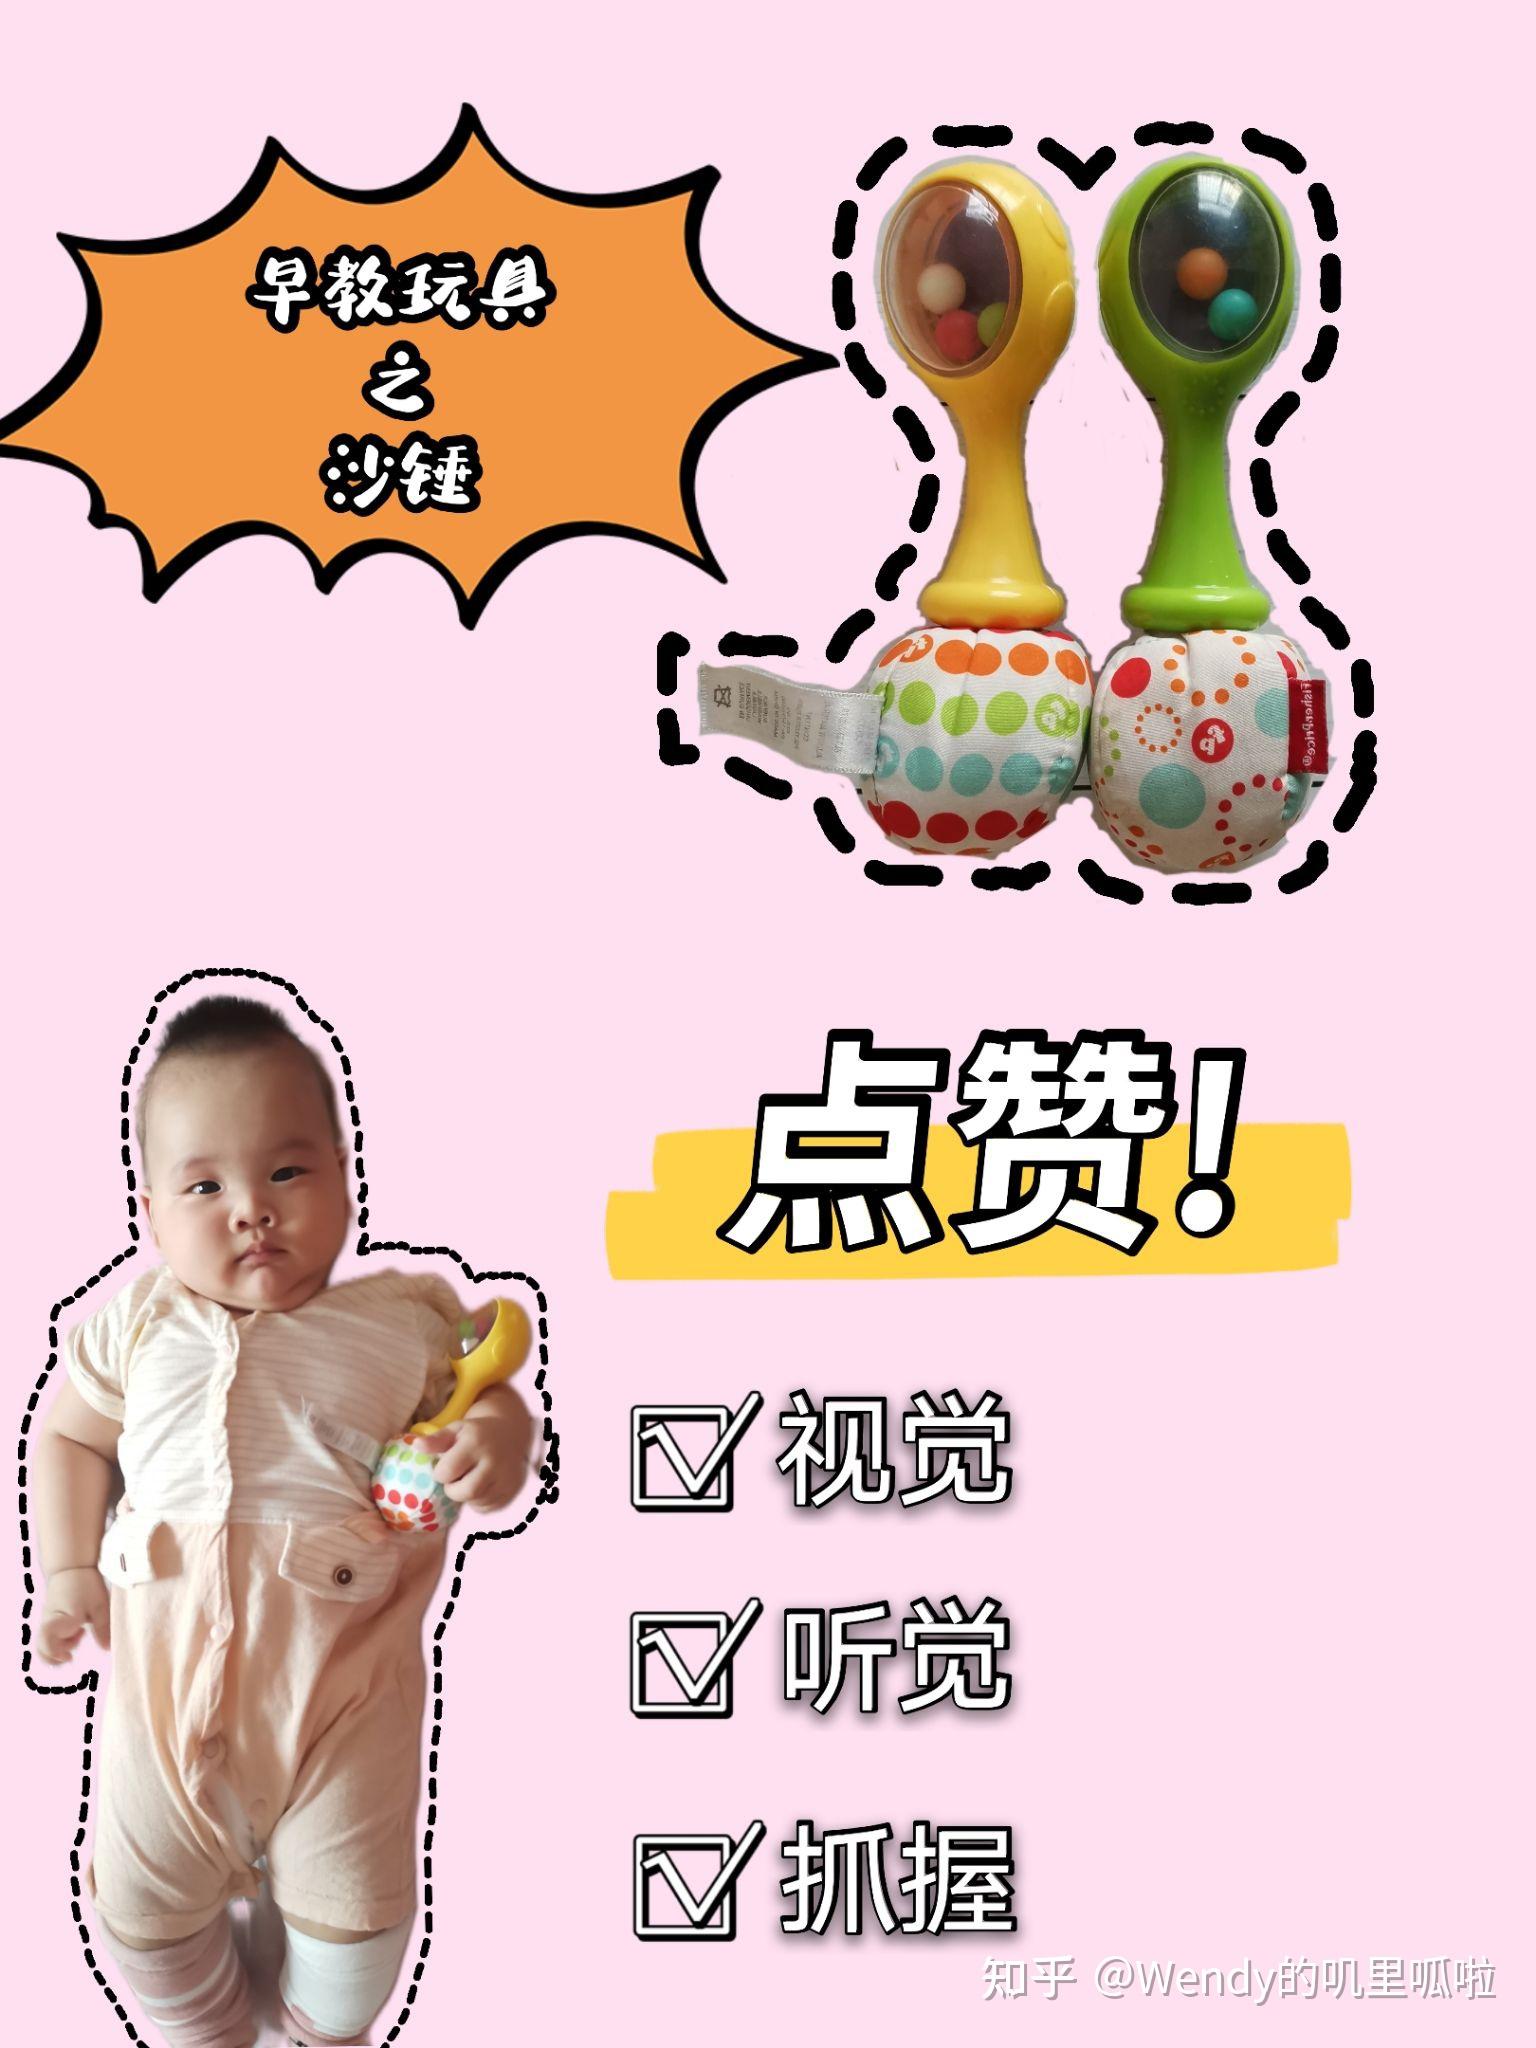 四个月宝宝睡眠小贴士 4 Month Old Baby Sleep Tips_ What you need to know_哔哩哔哩 (゜-゜ ...